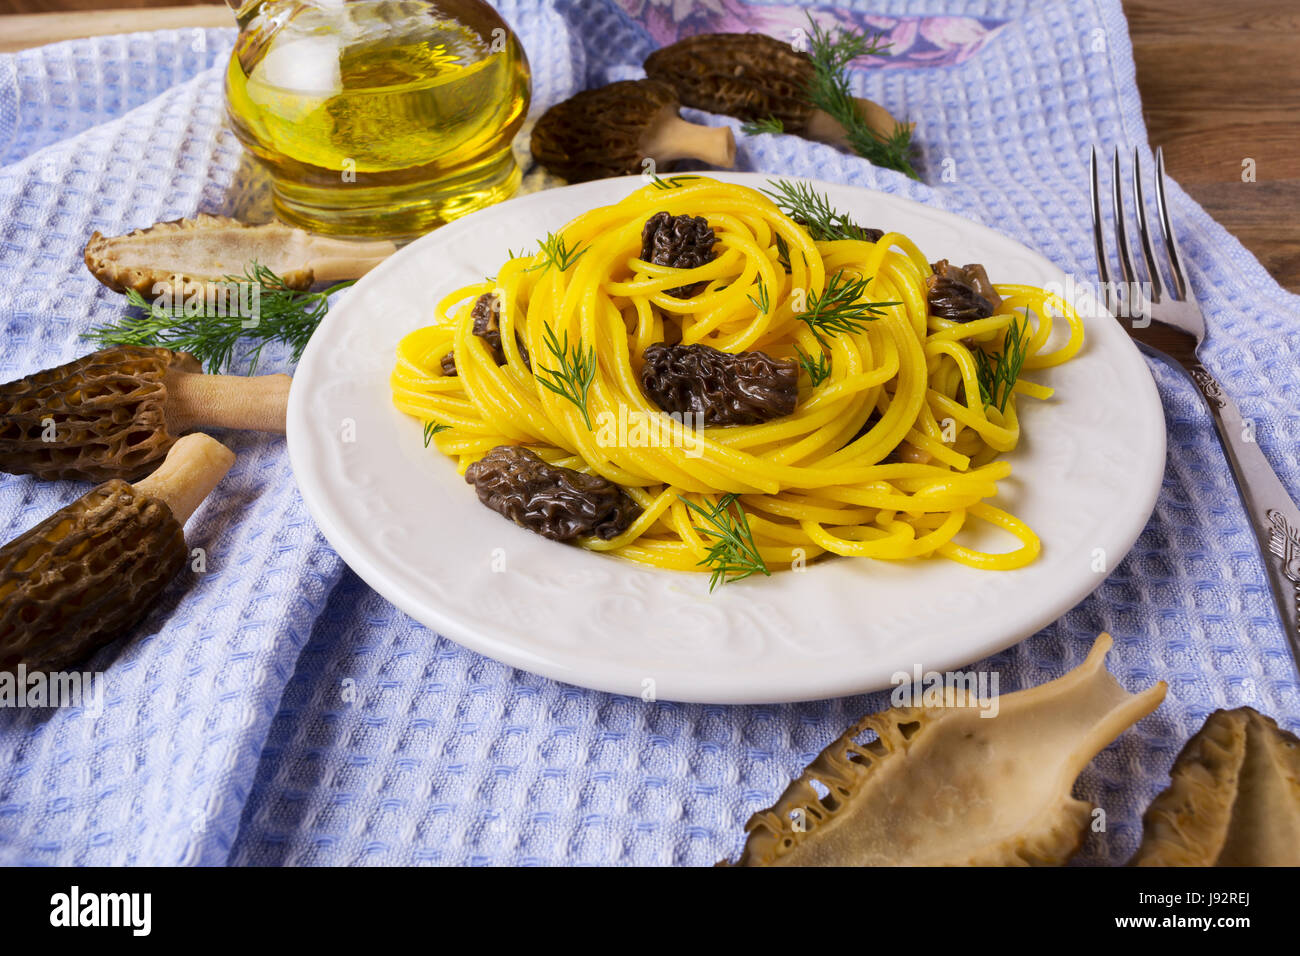 Délicieux avec les pâtes italiennes les morilles noires. Dîner de style méditerranéen. Banque D'Images